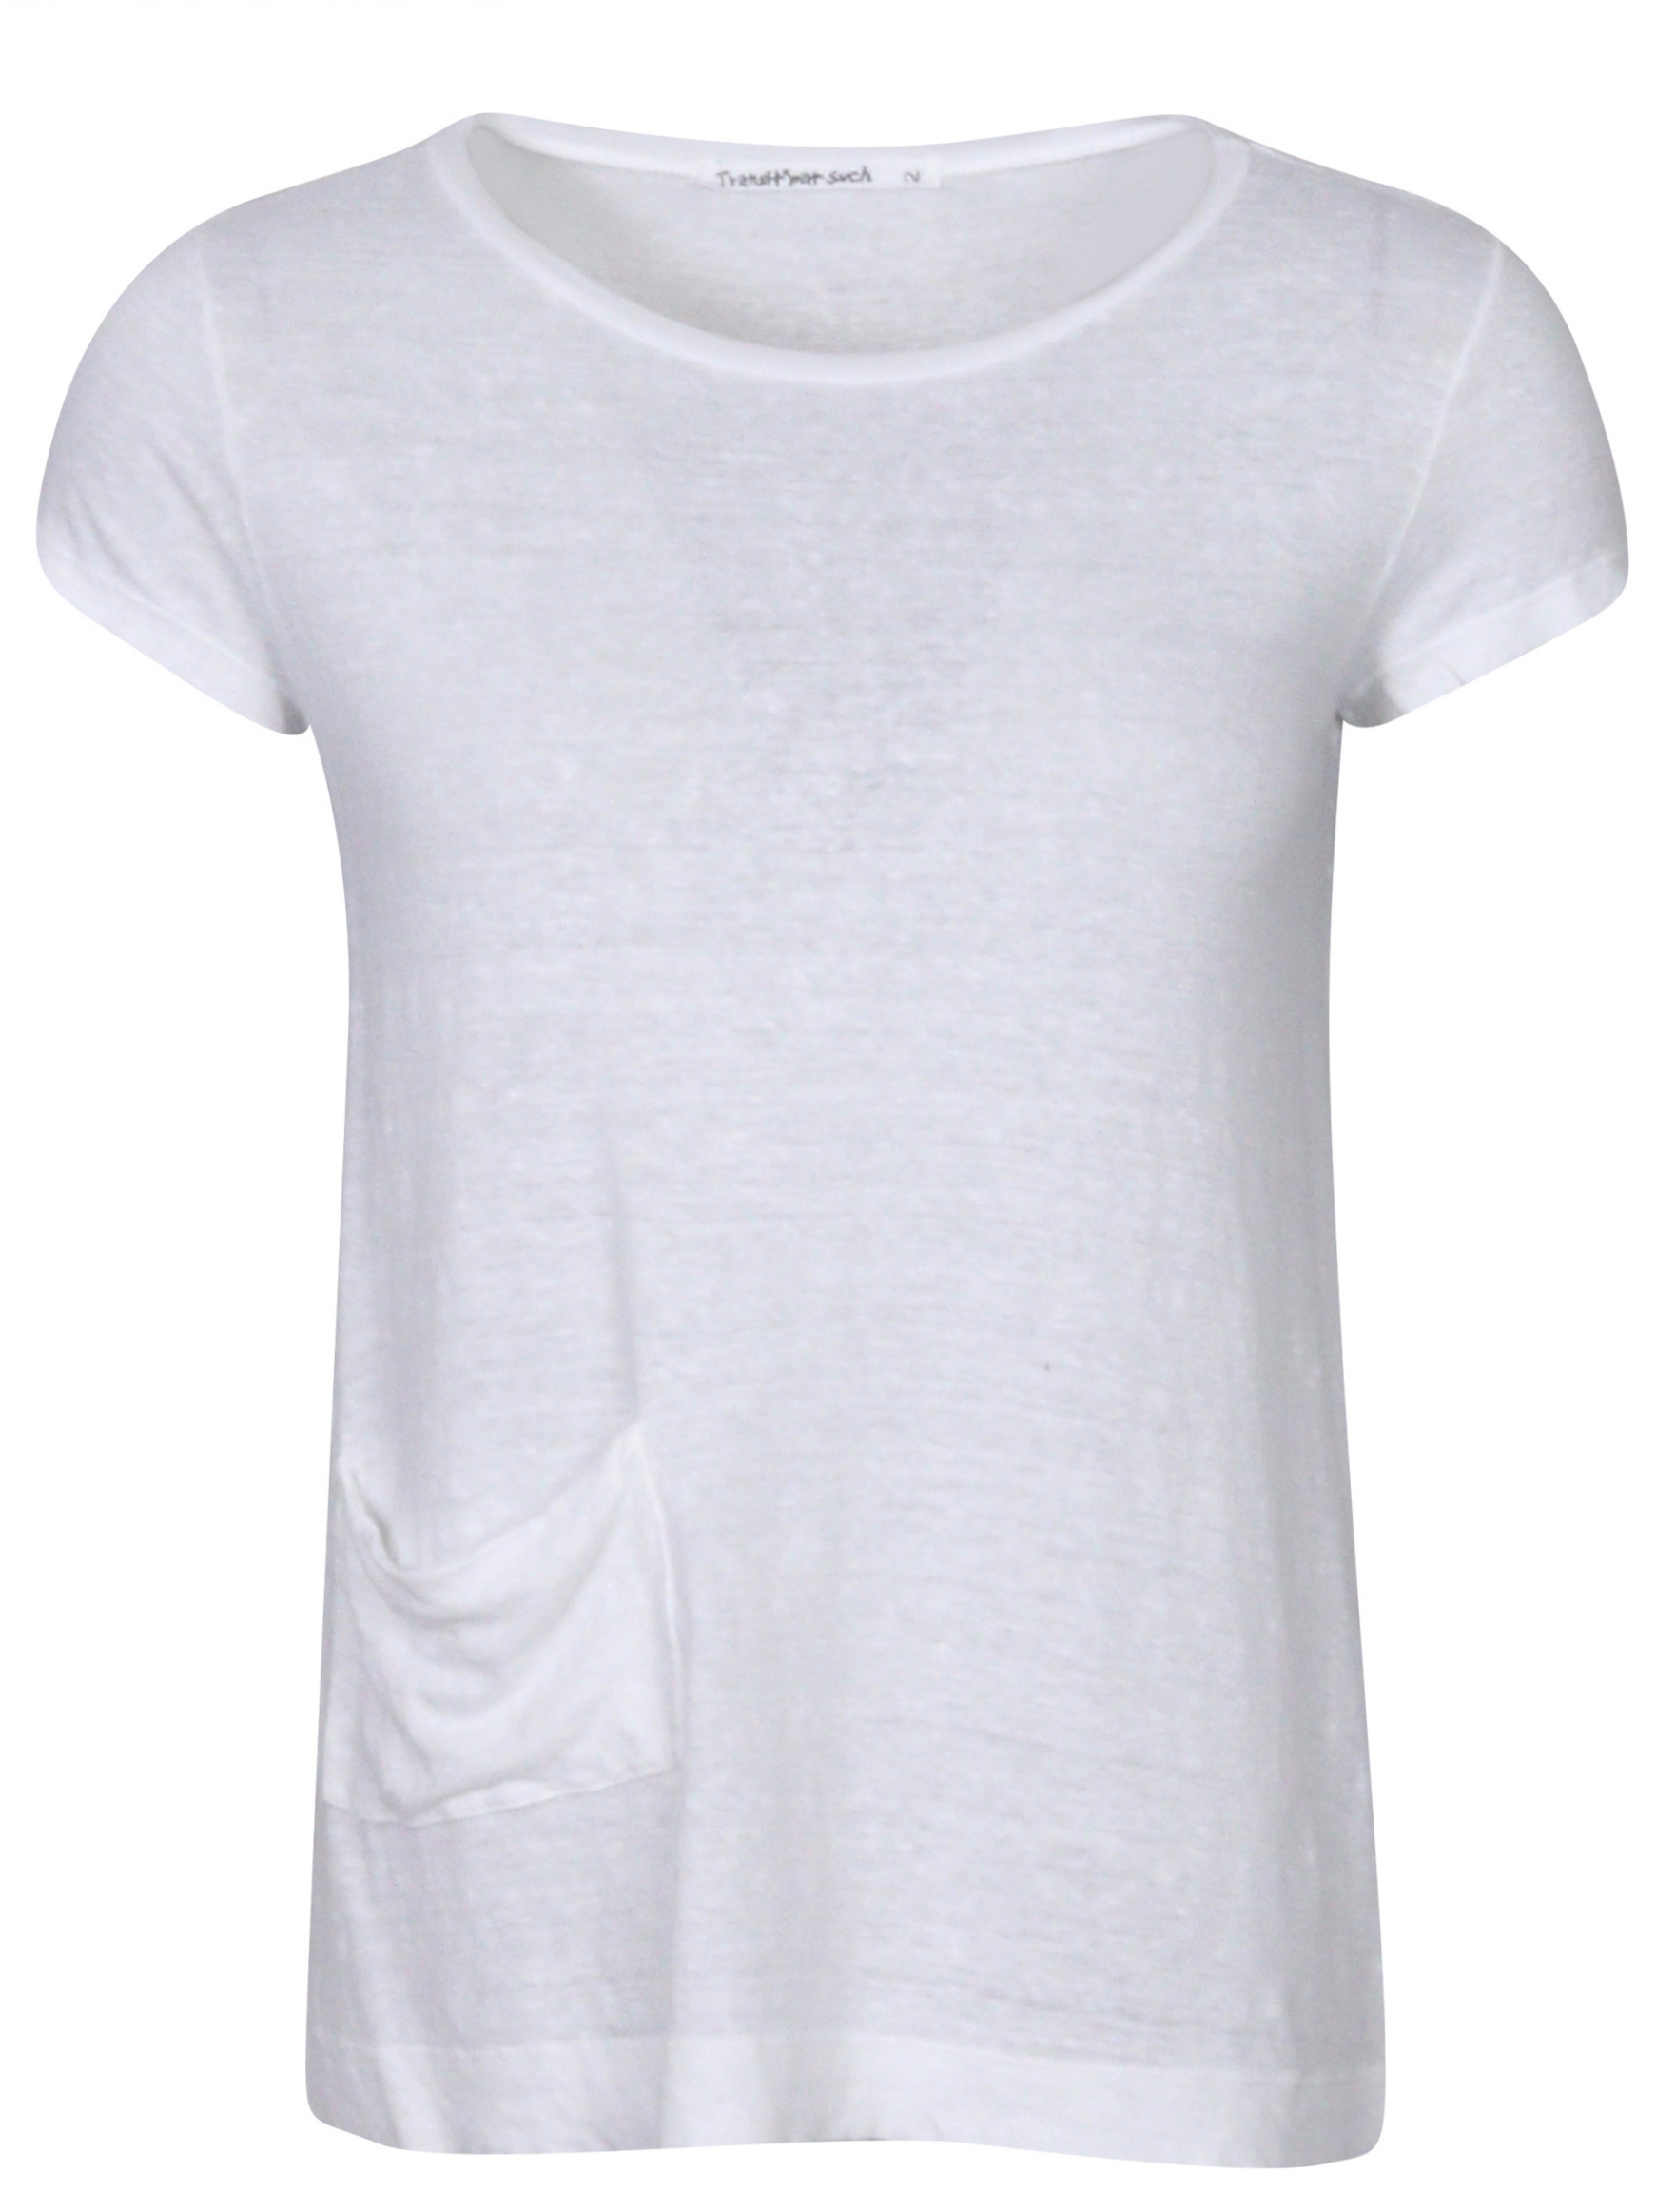 Transit Par Such Linen T-Shirt White